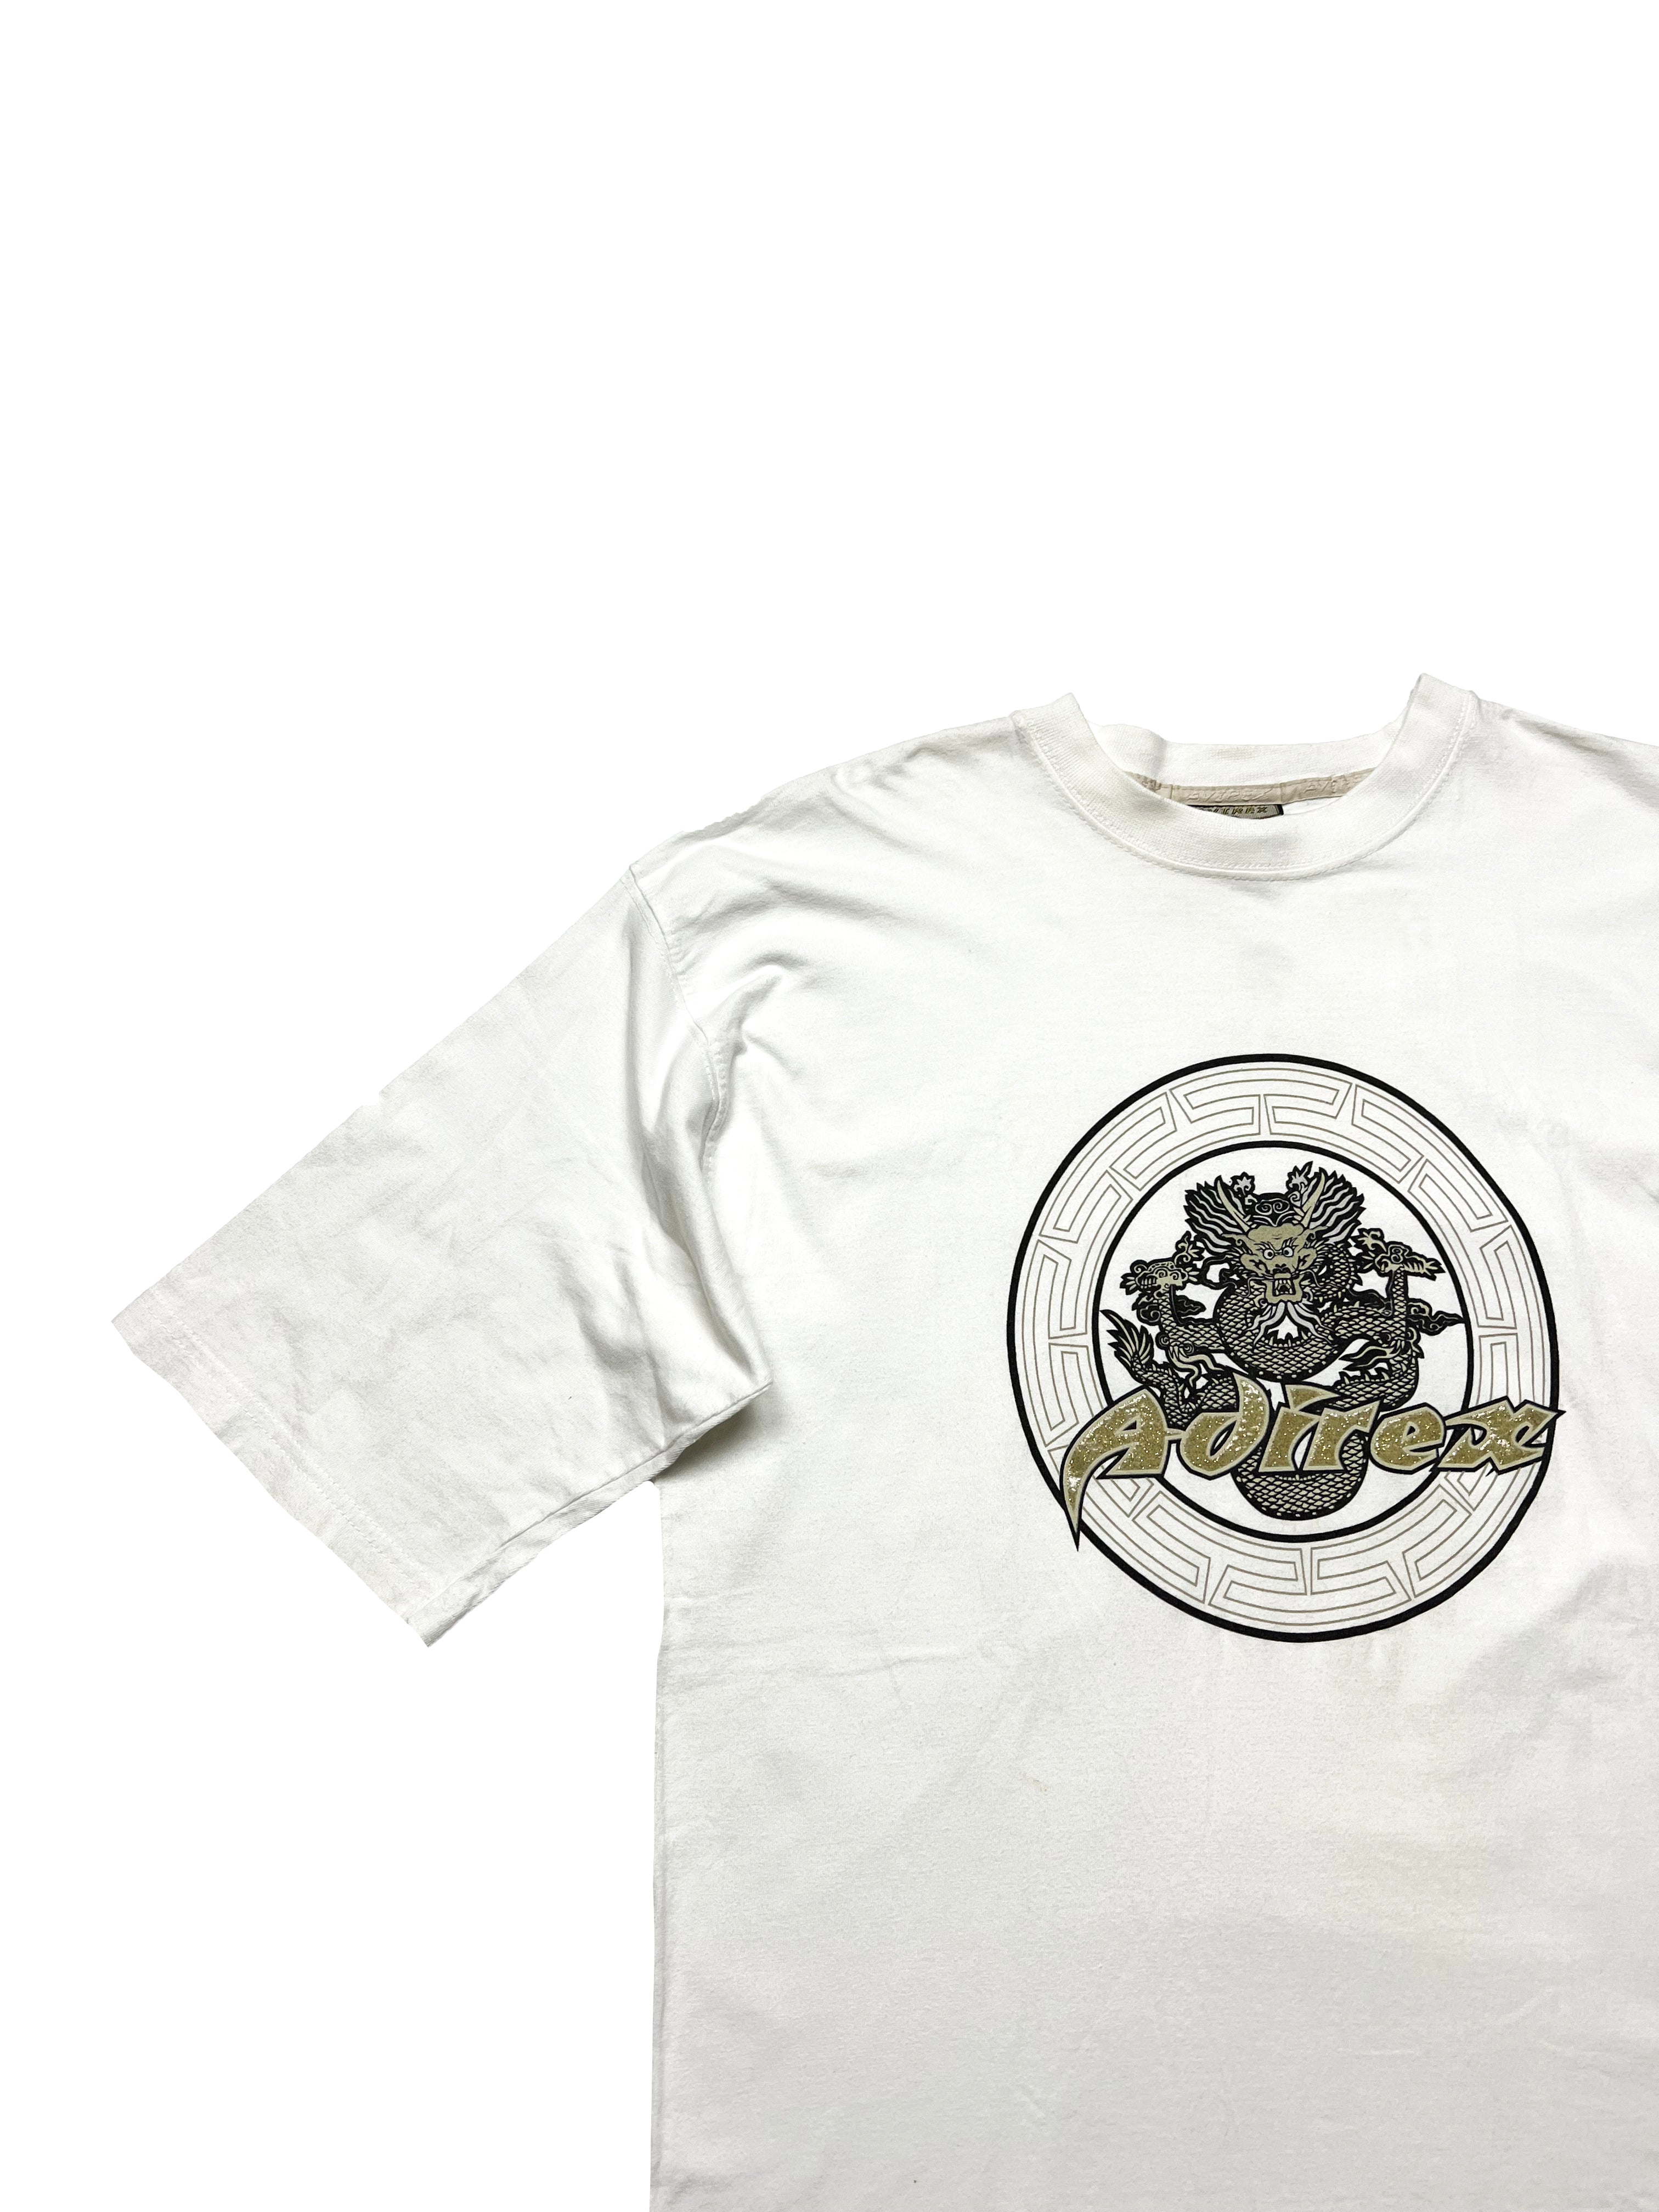 Avirex 'King Cobra' White T-shirt 90's